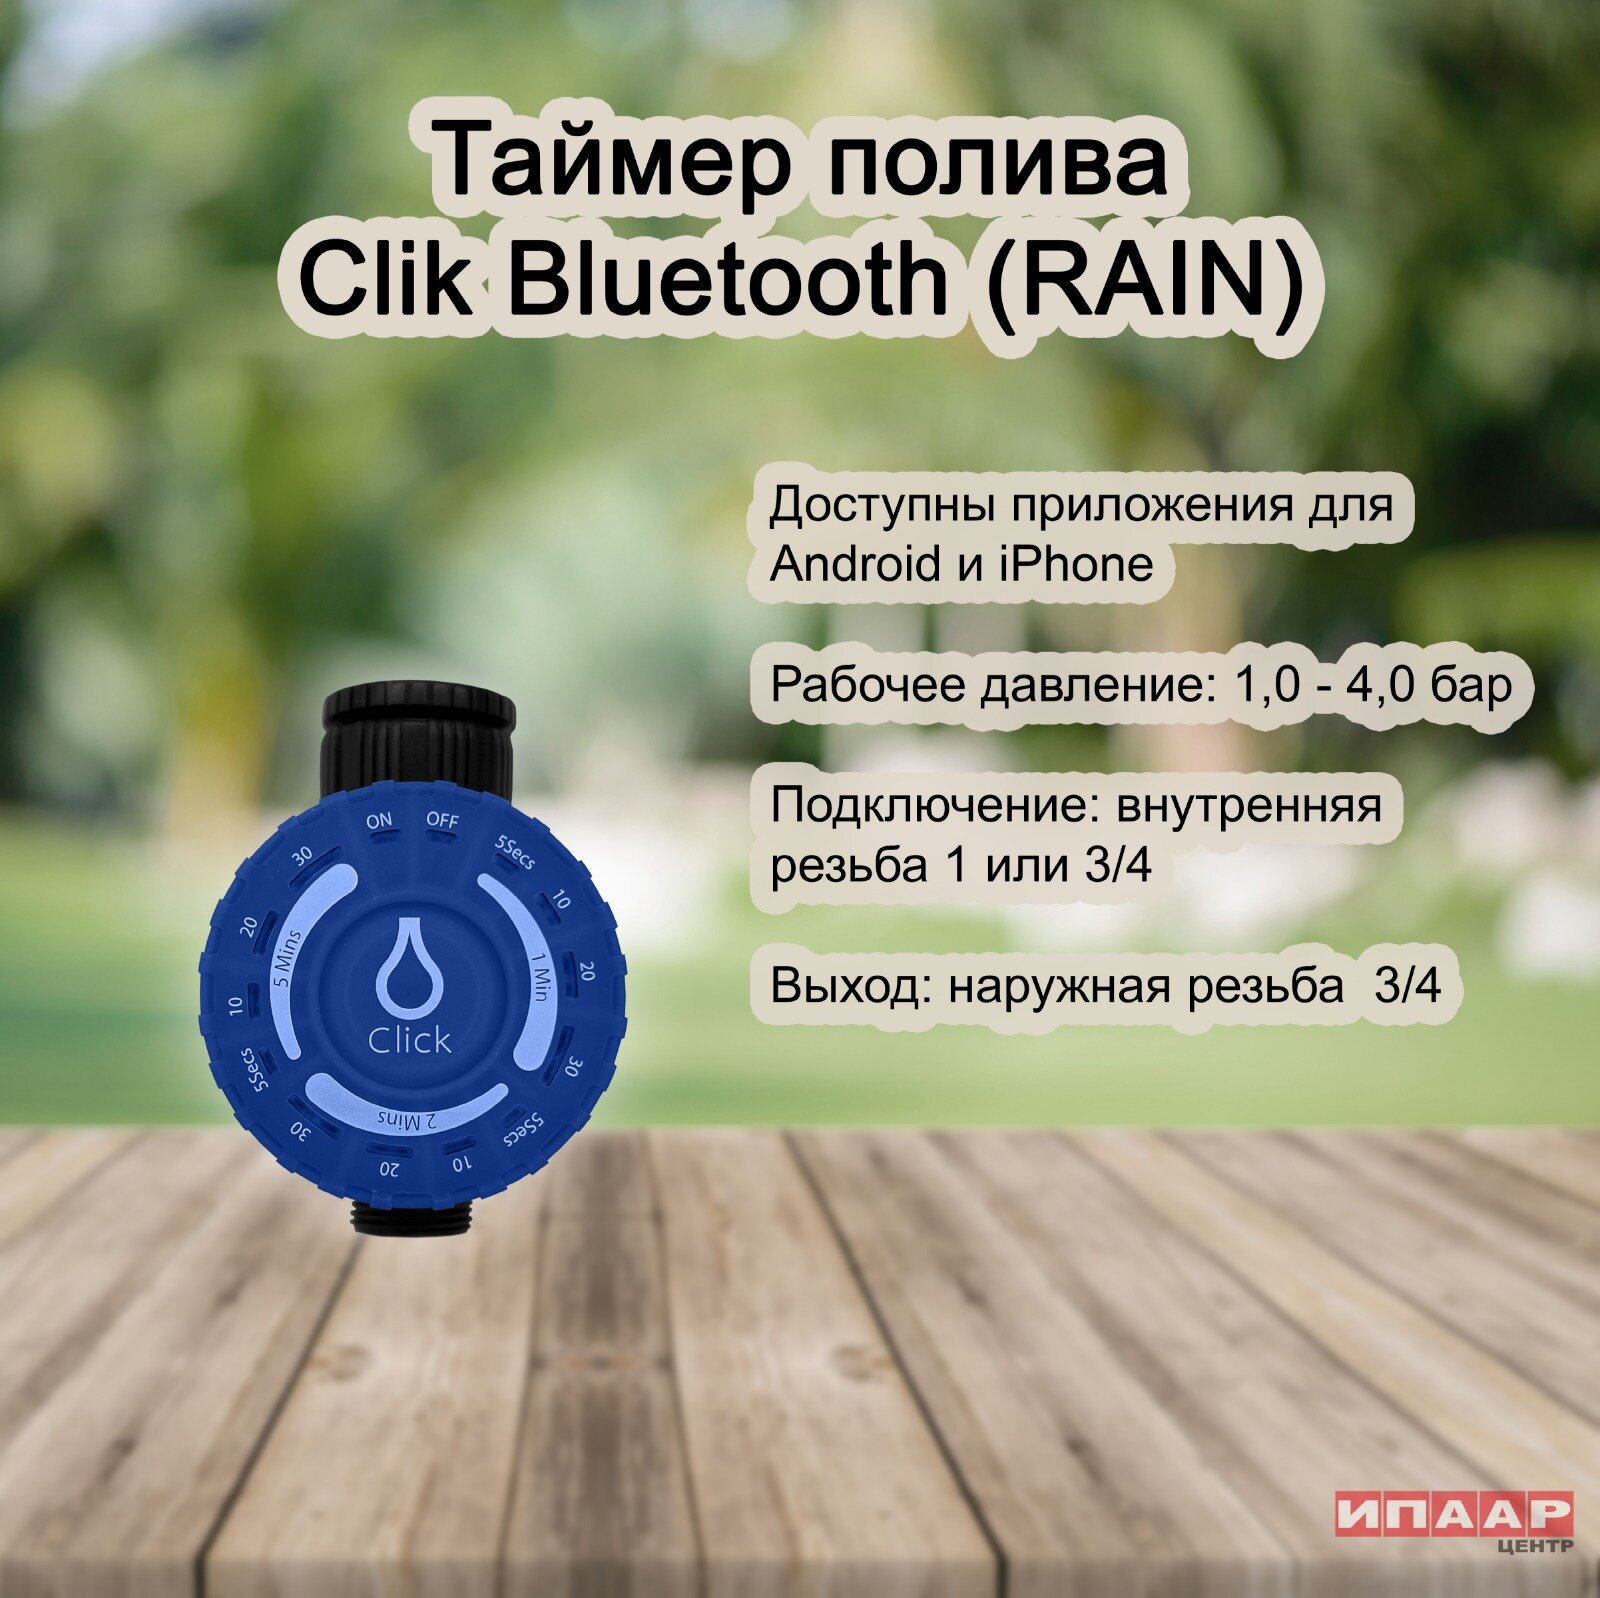 Таймер CLICK BLUETOOTH для крана с управлением по Bluetooth (RAIN)